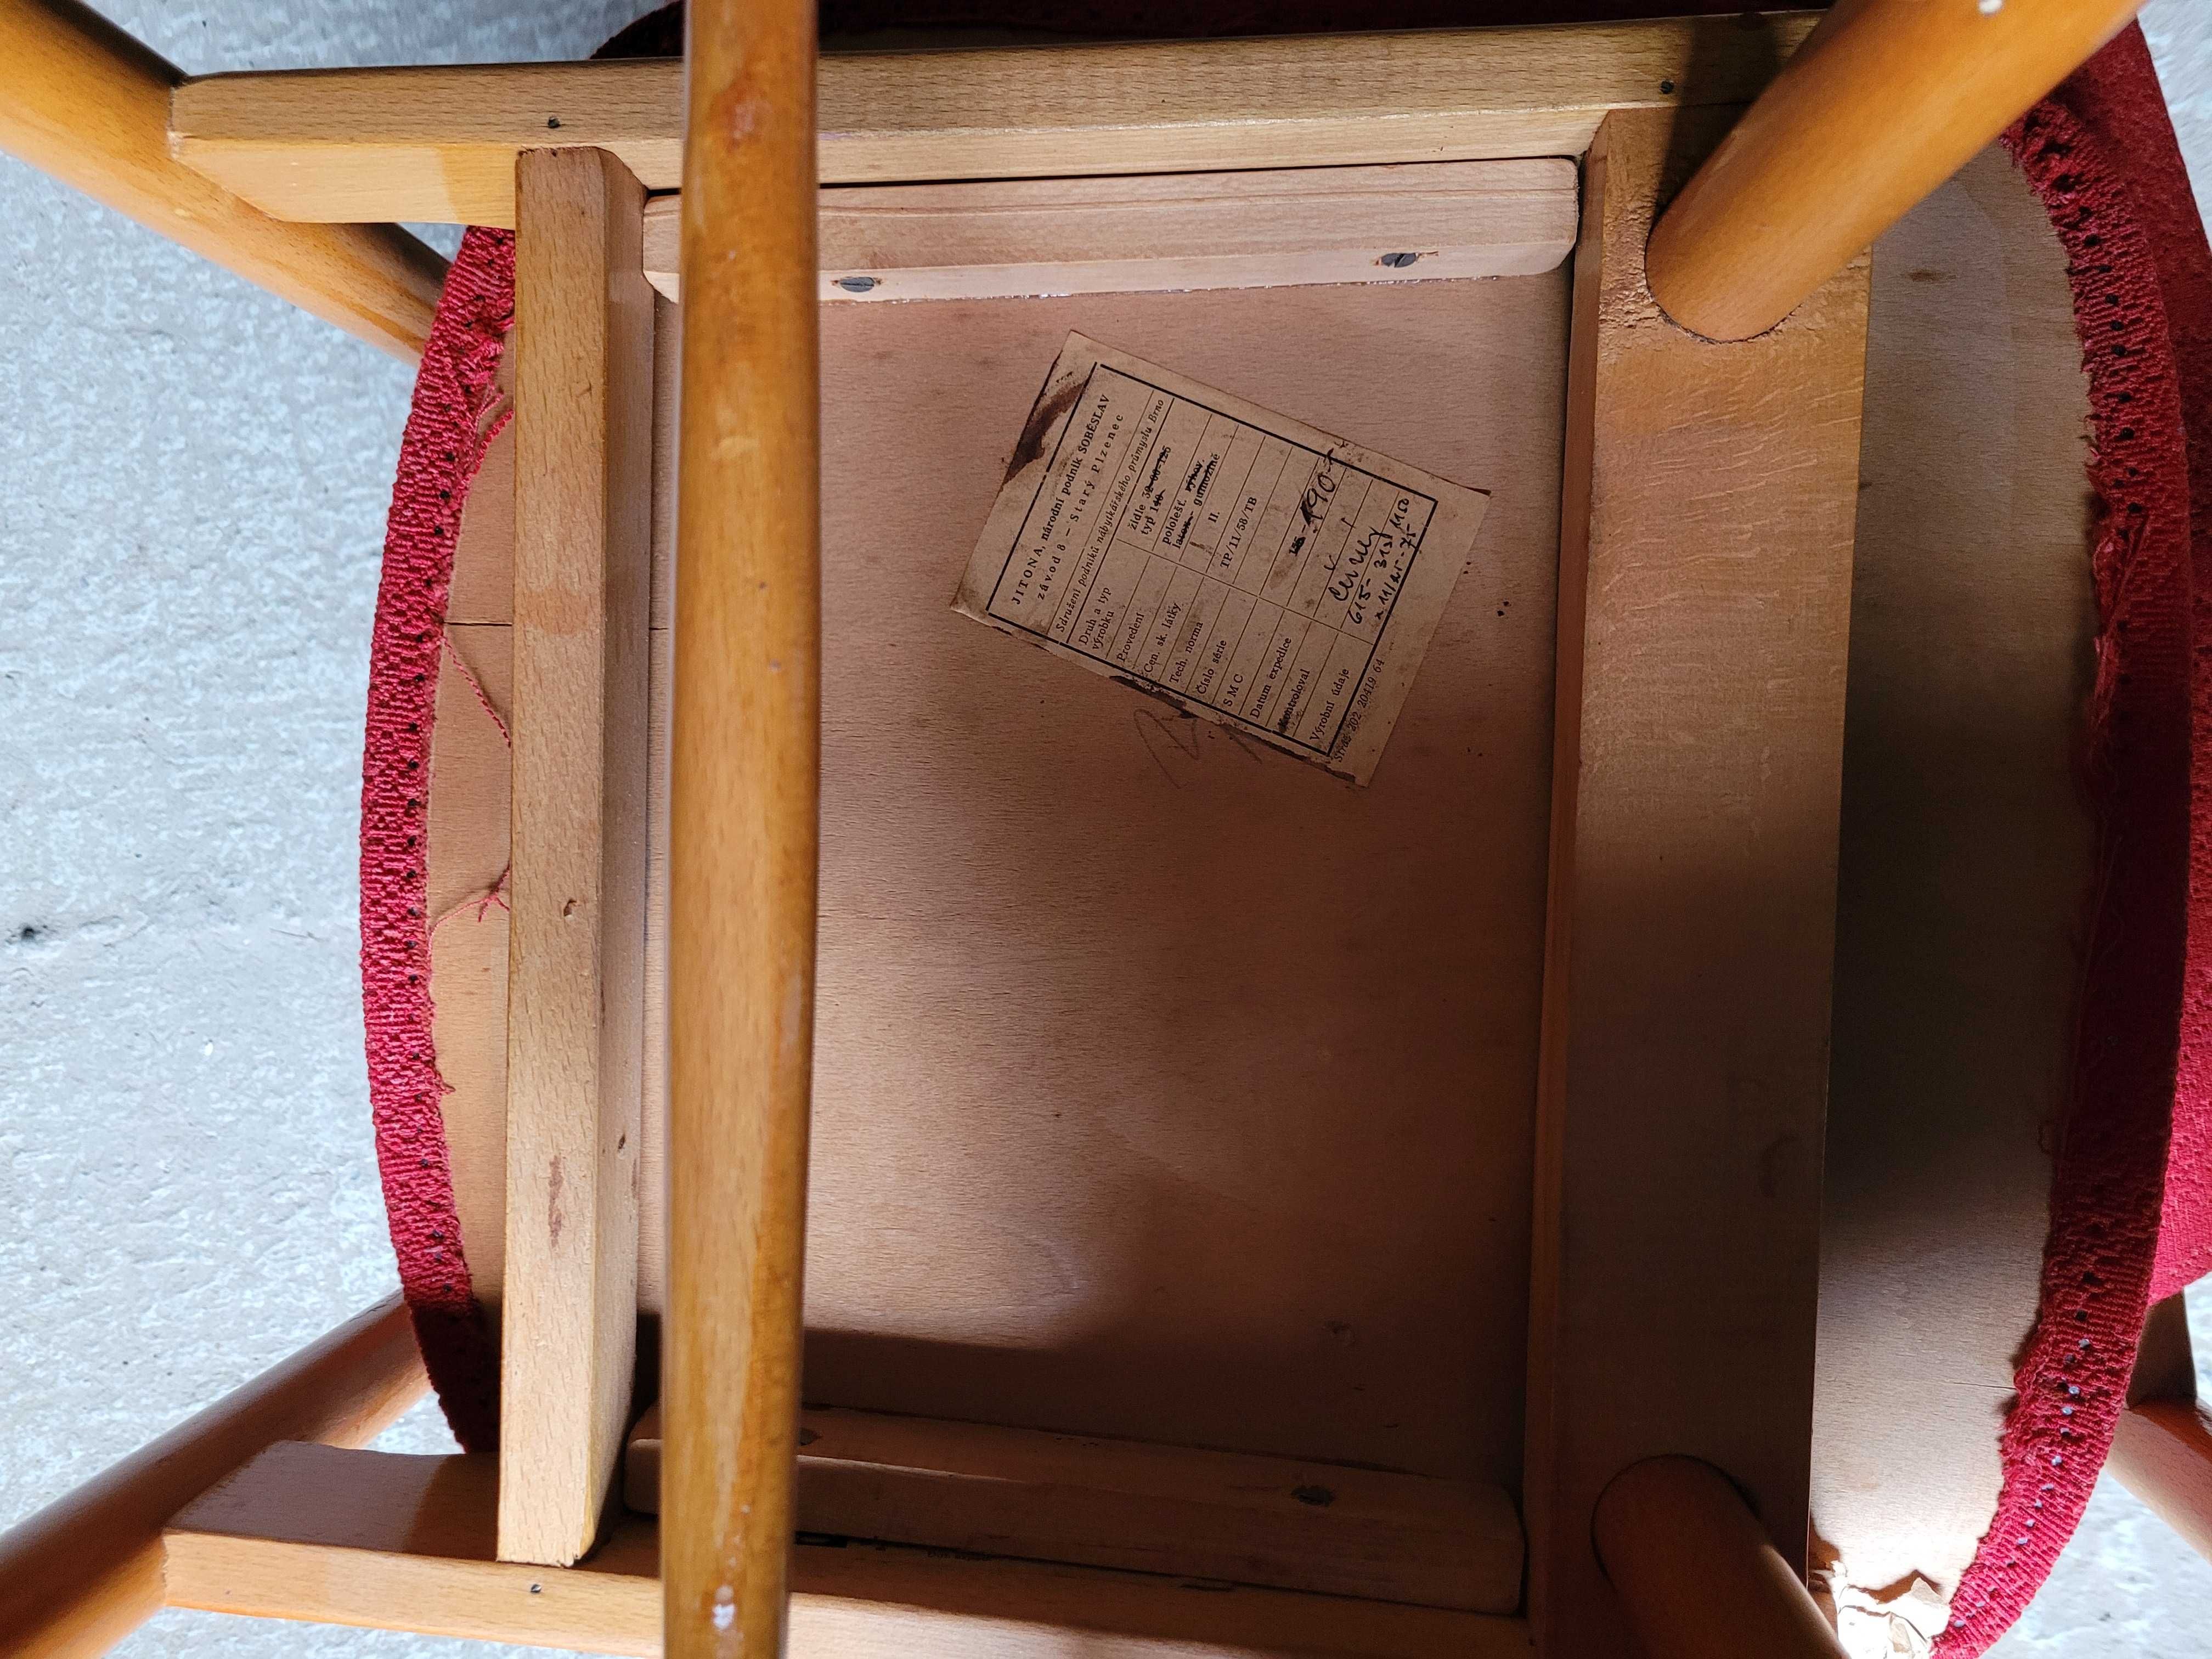 Krzesła Jitona 70 lata vintage Czechoslowacja